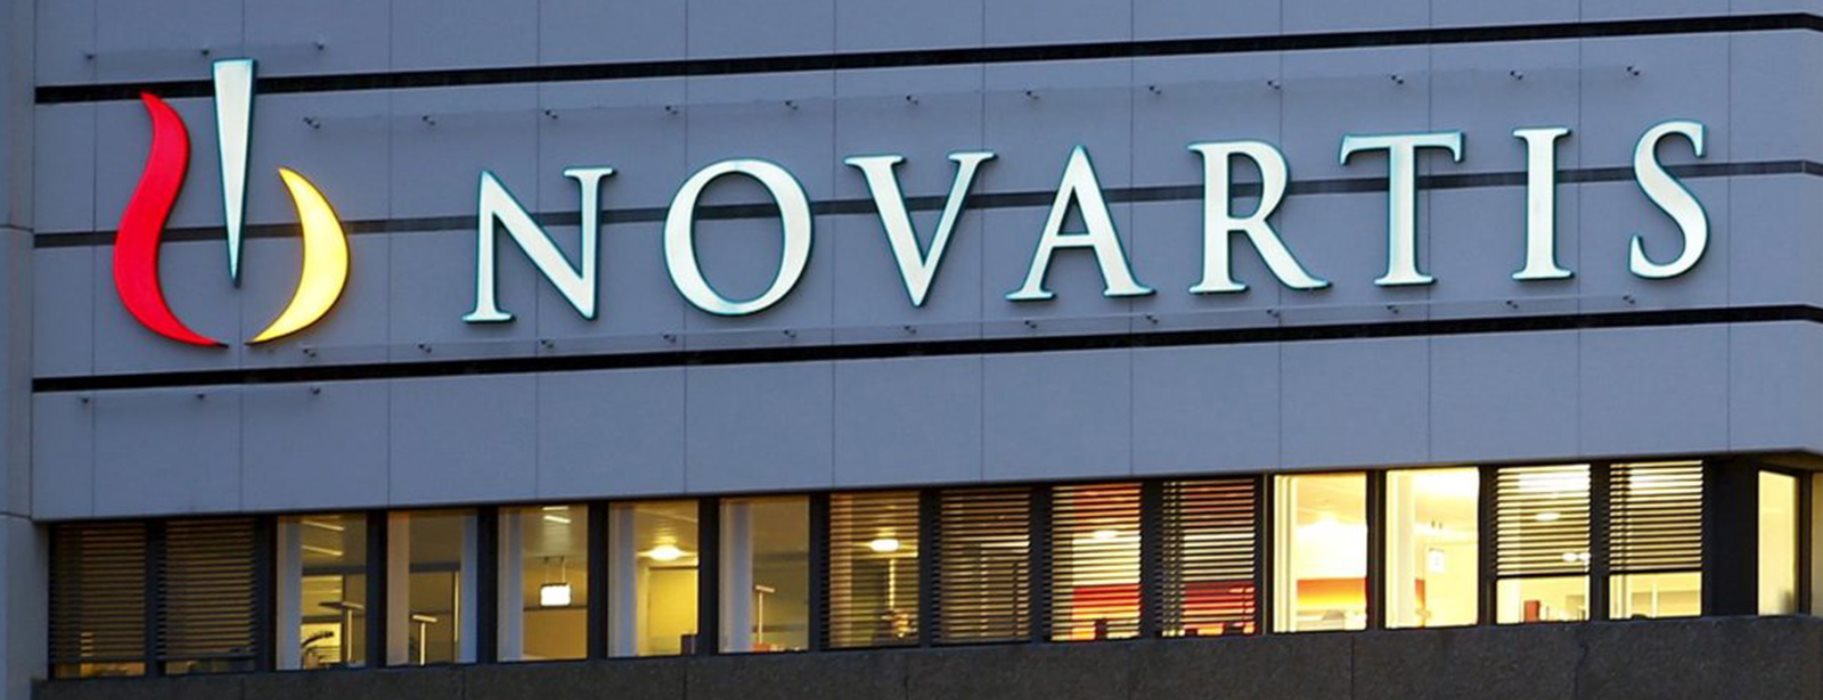 Προανακριτική Novartis: Ψηφίστηκε η εξαίρεση του Π.Πολάκη και του Δ.Τζανακόπουλου